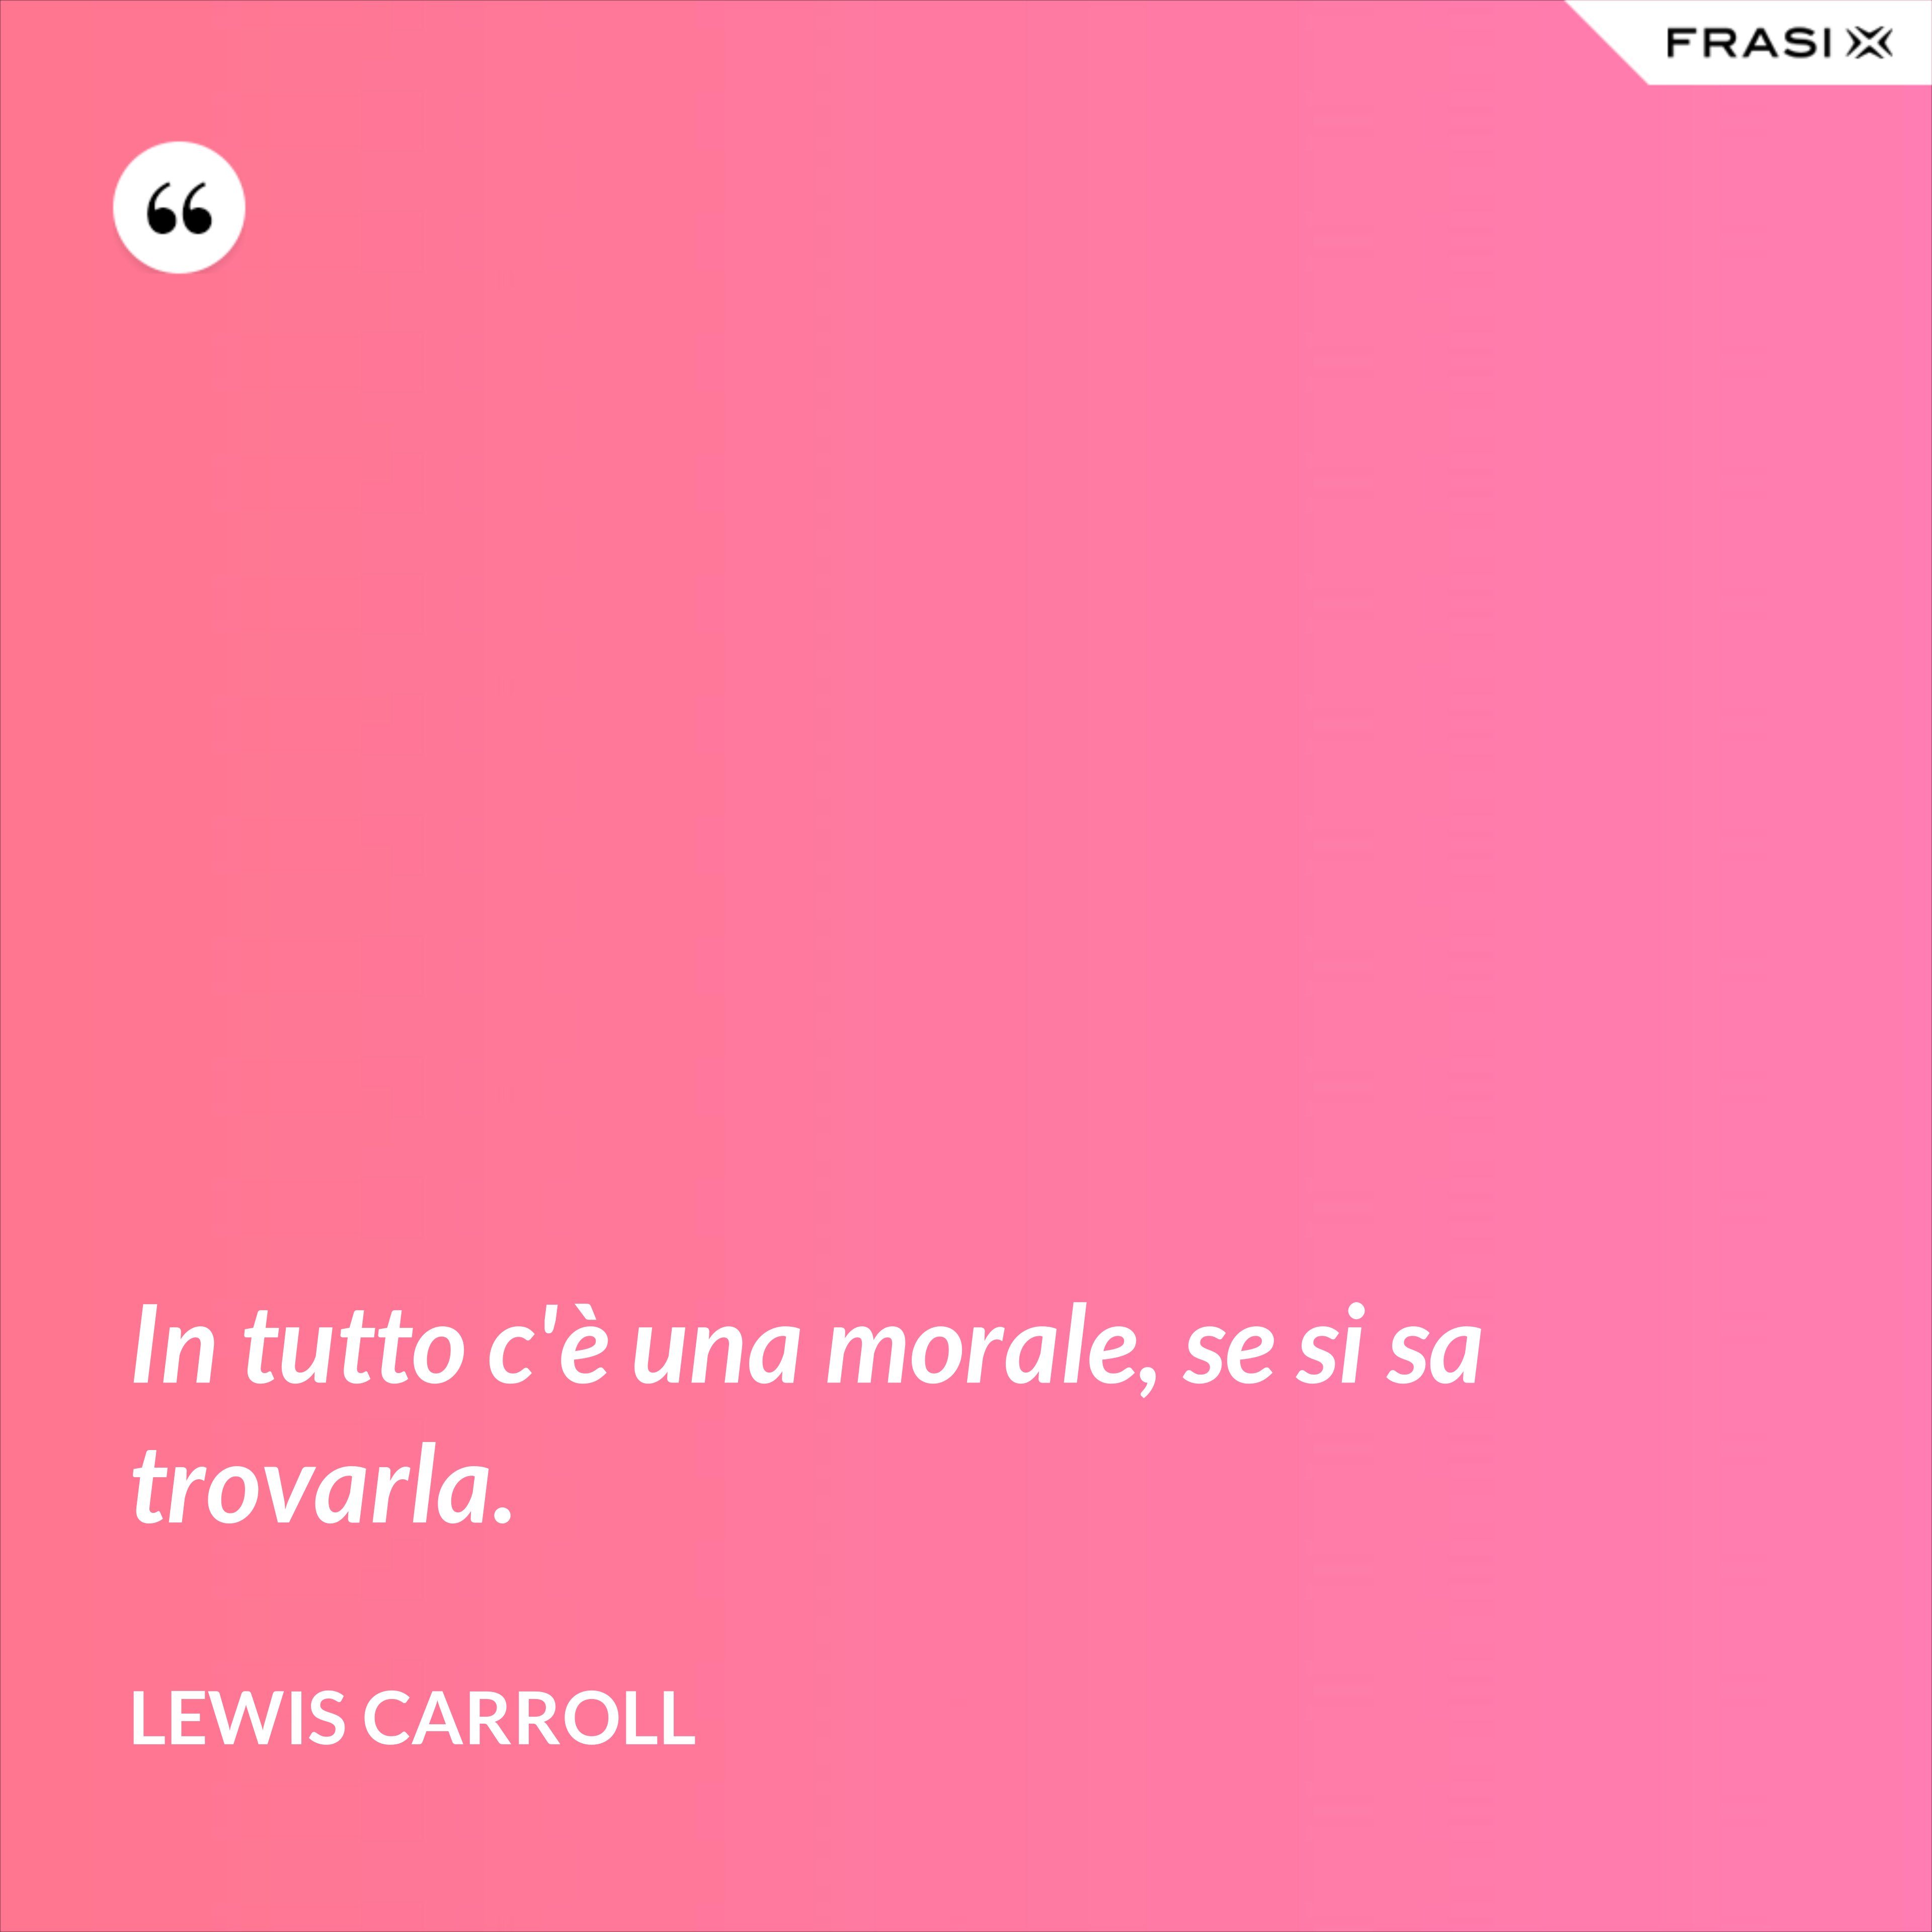 In tutto c'è una morale, se si sa trovarla. - Lewis Carroll